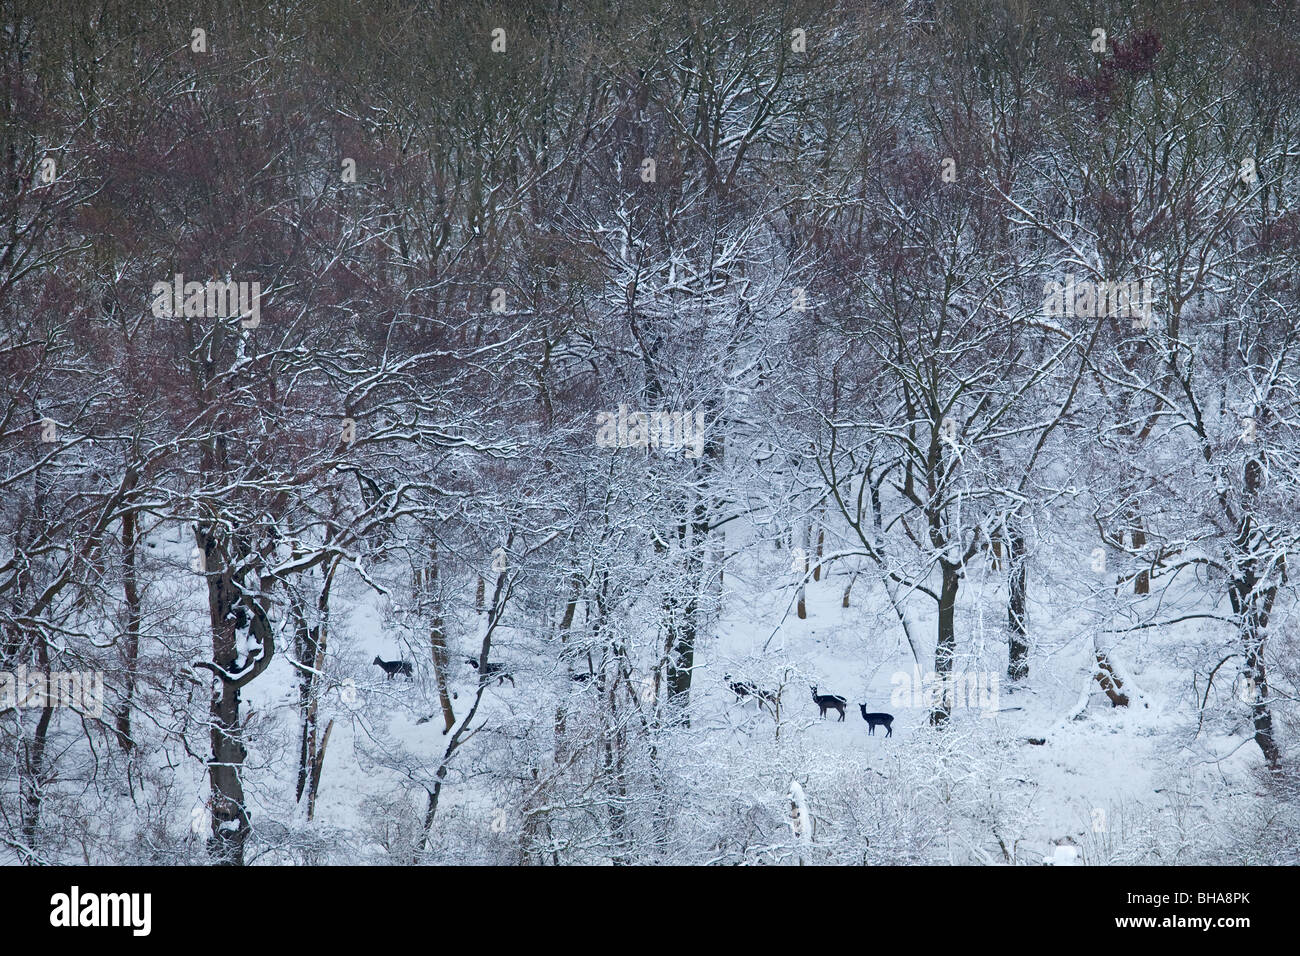 Daini passeggia in un bosco di faggi in inverno la neve Foto Stock